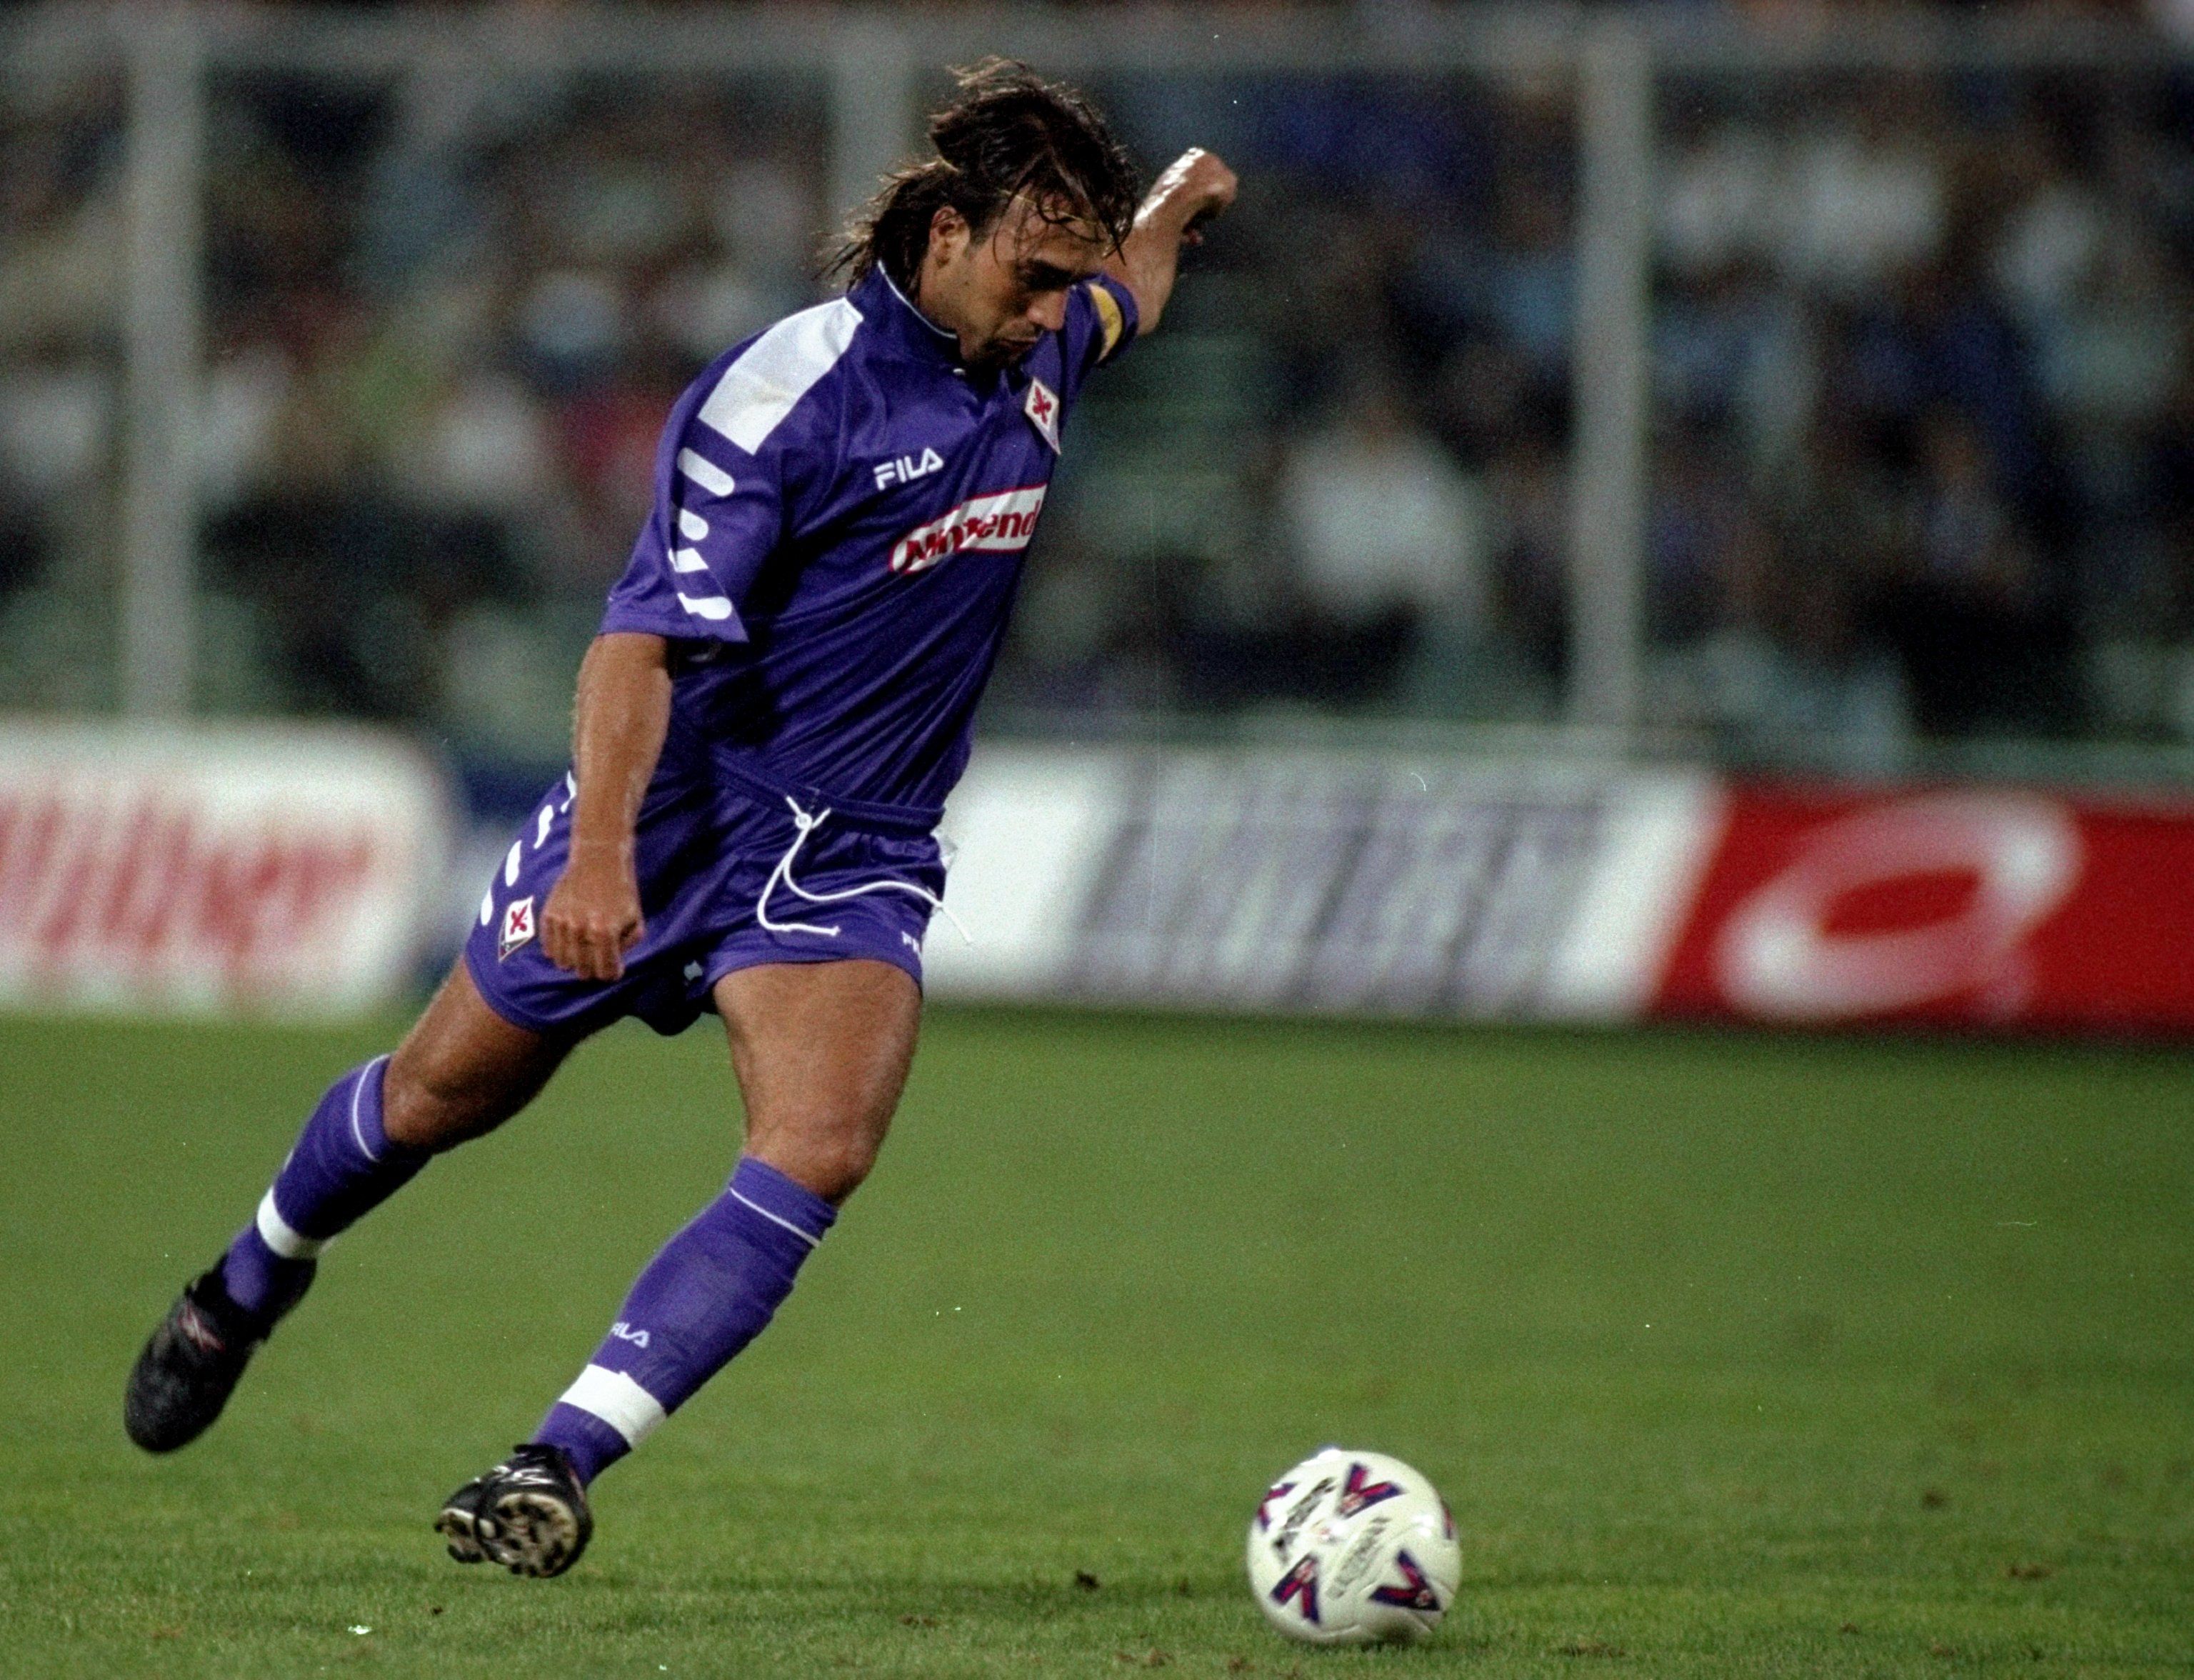 Gabriel Batistuta in action for Fiorentina